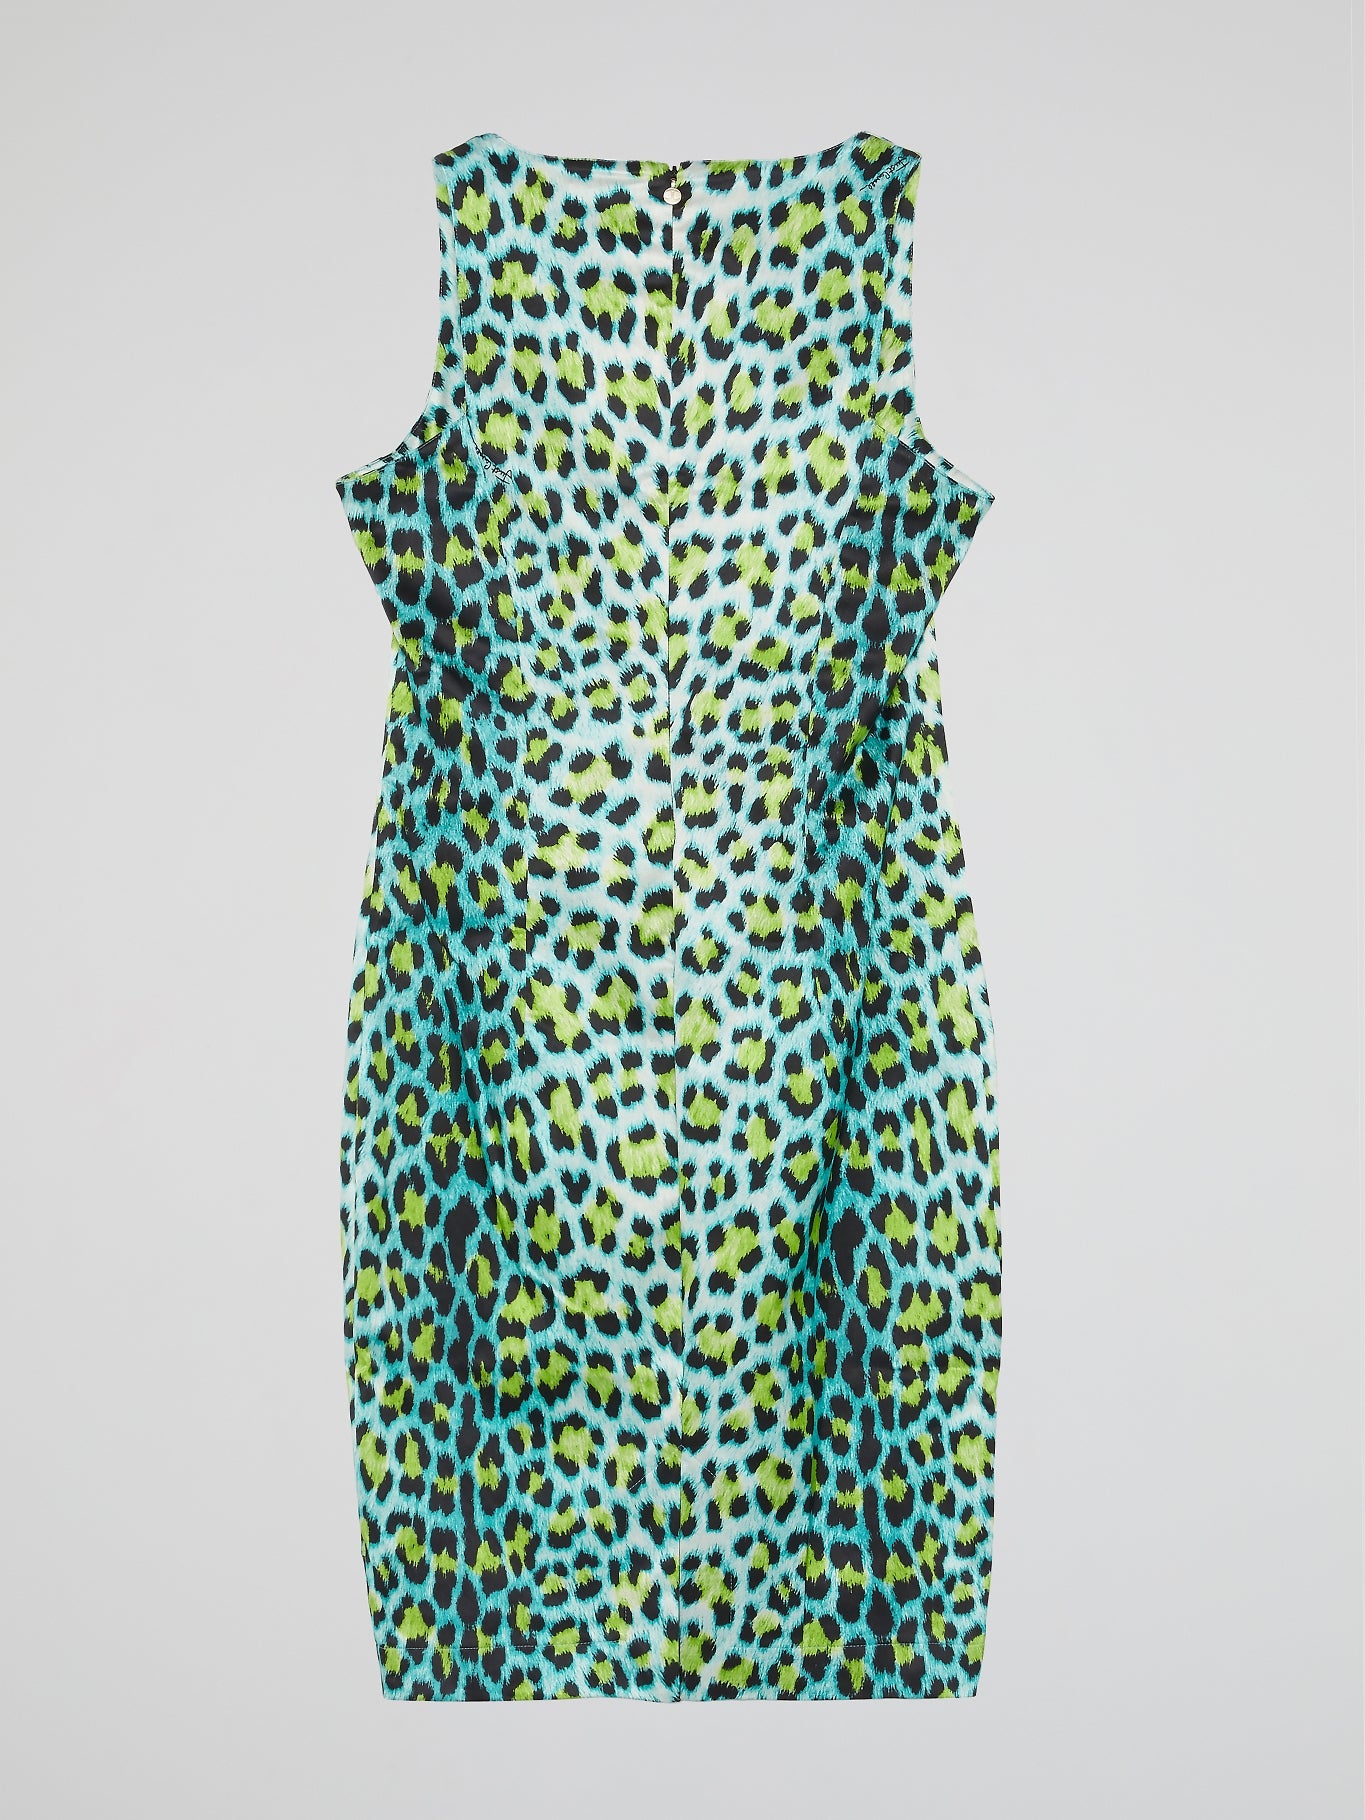 Leopard Print Sheath Dress